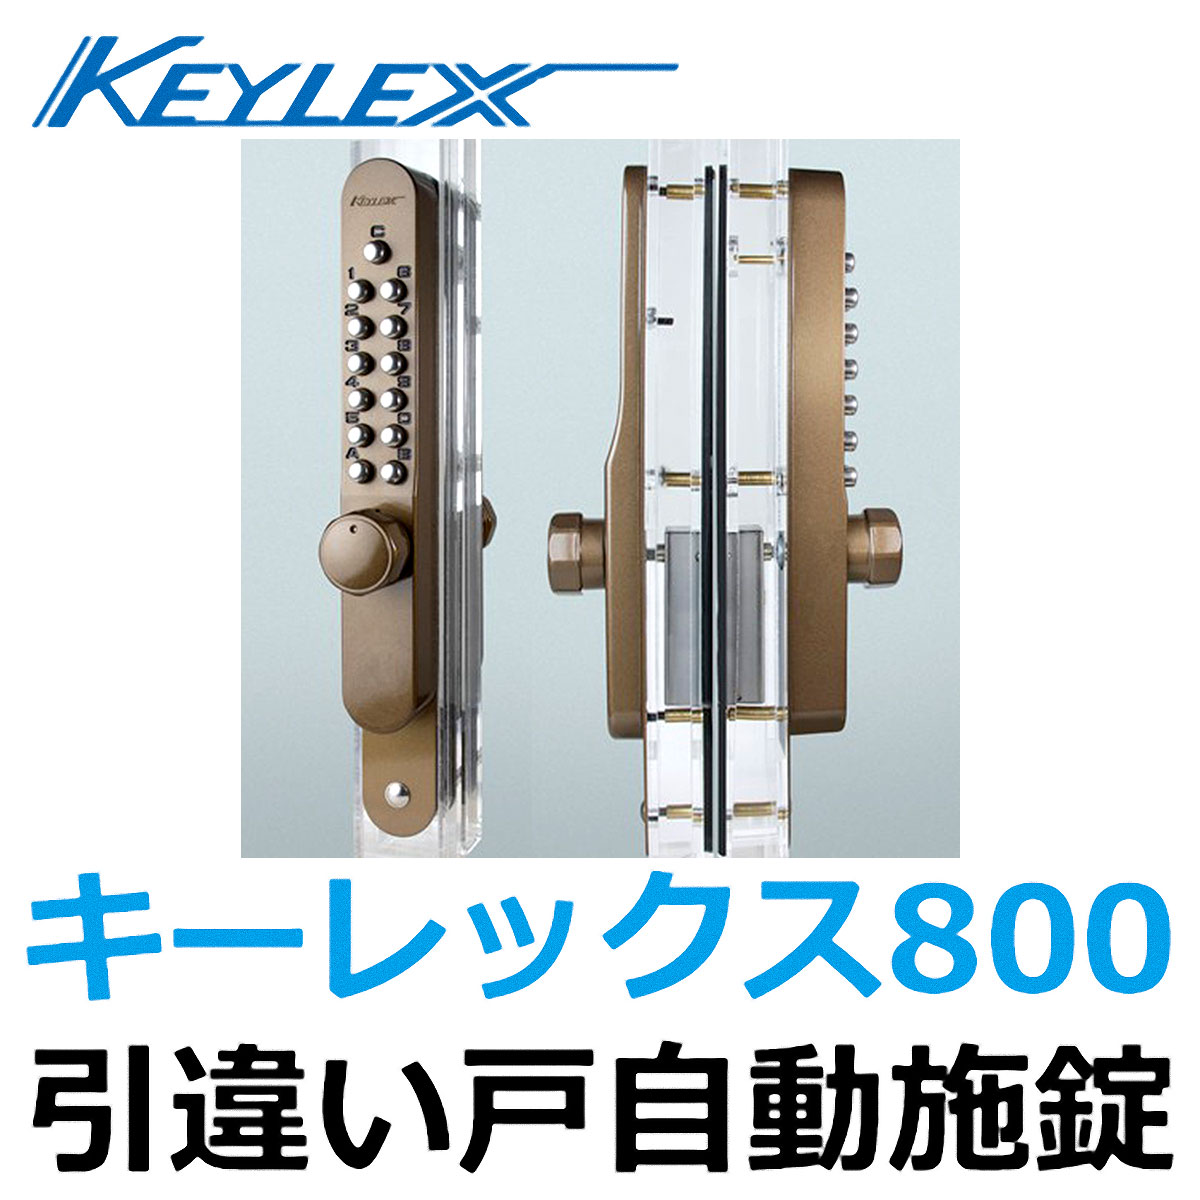 長沢製作所 キーレックス KL800 引違い戸自動施錠鍵付 K887TM